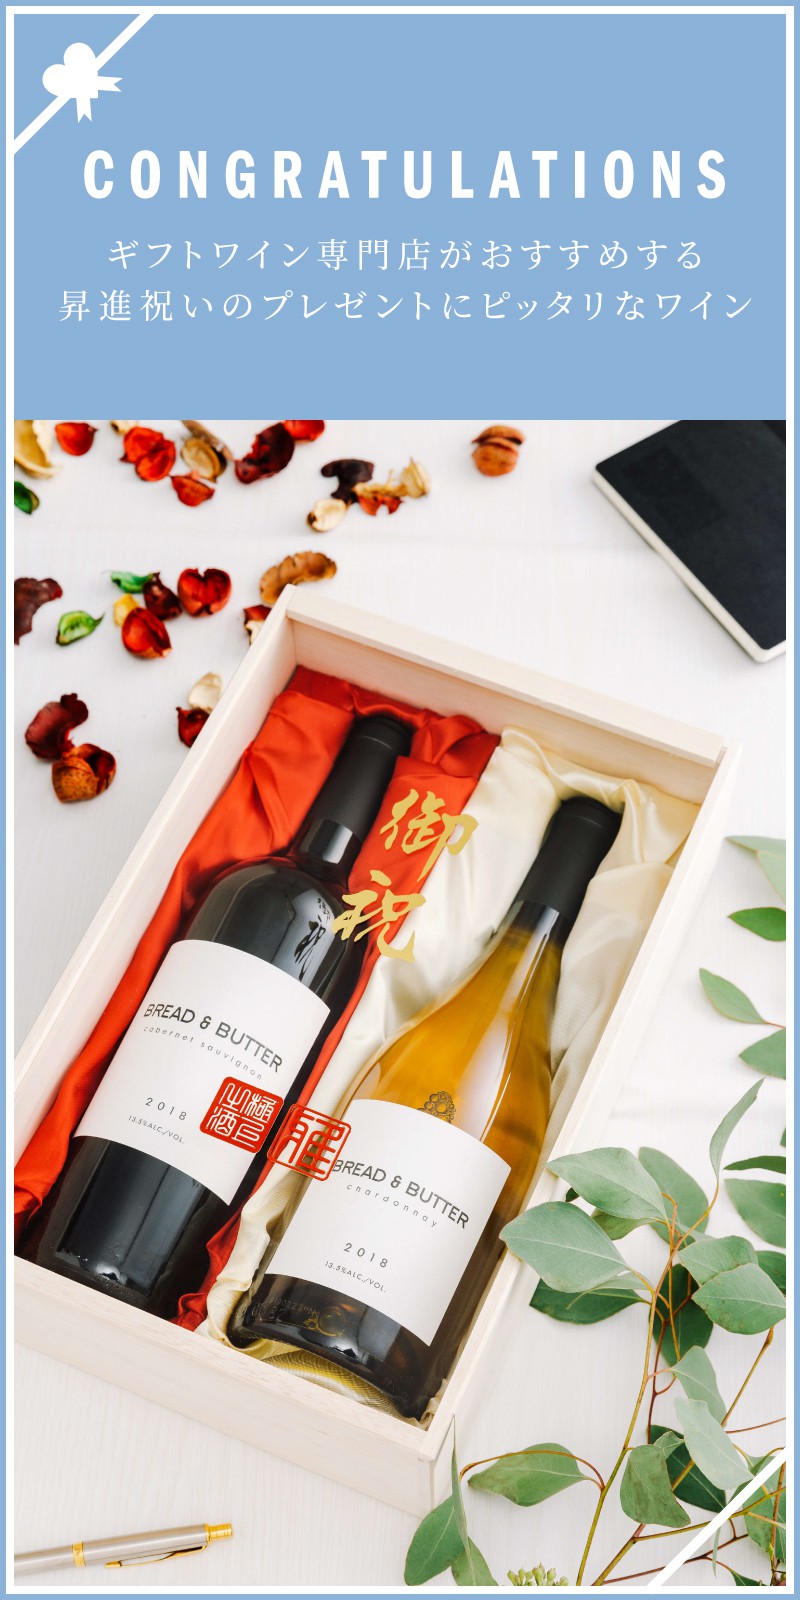 昇進 昇格祝い 栄転祝いのプレゼント ワイン人気ランキング 21 ワイン通販 Lovewine ラブワイン